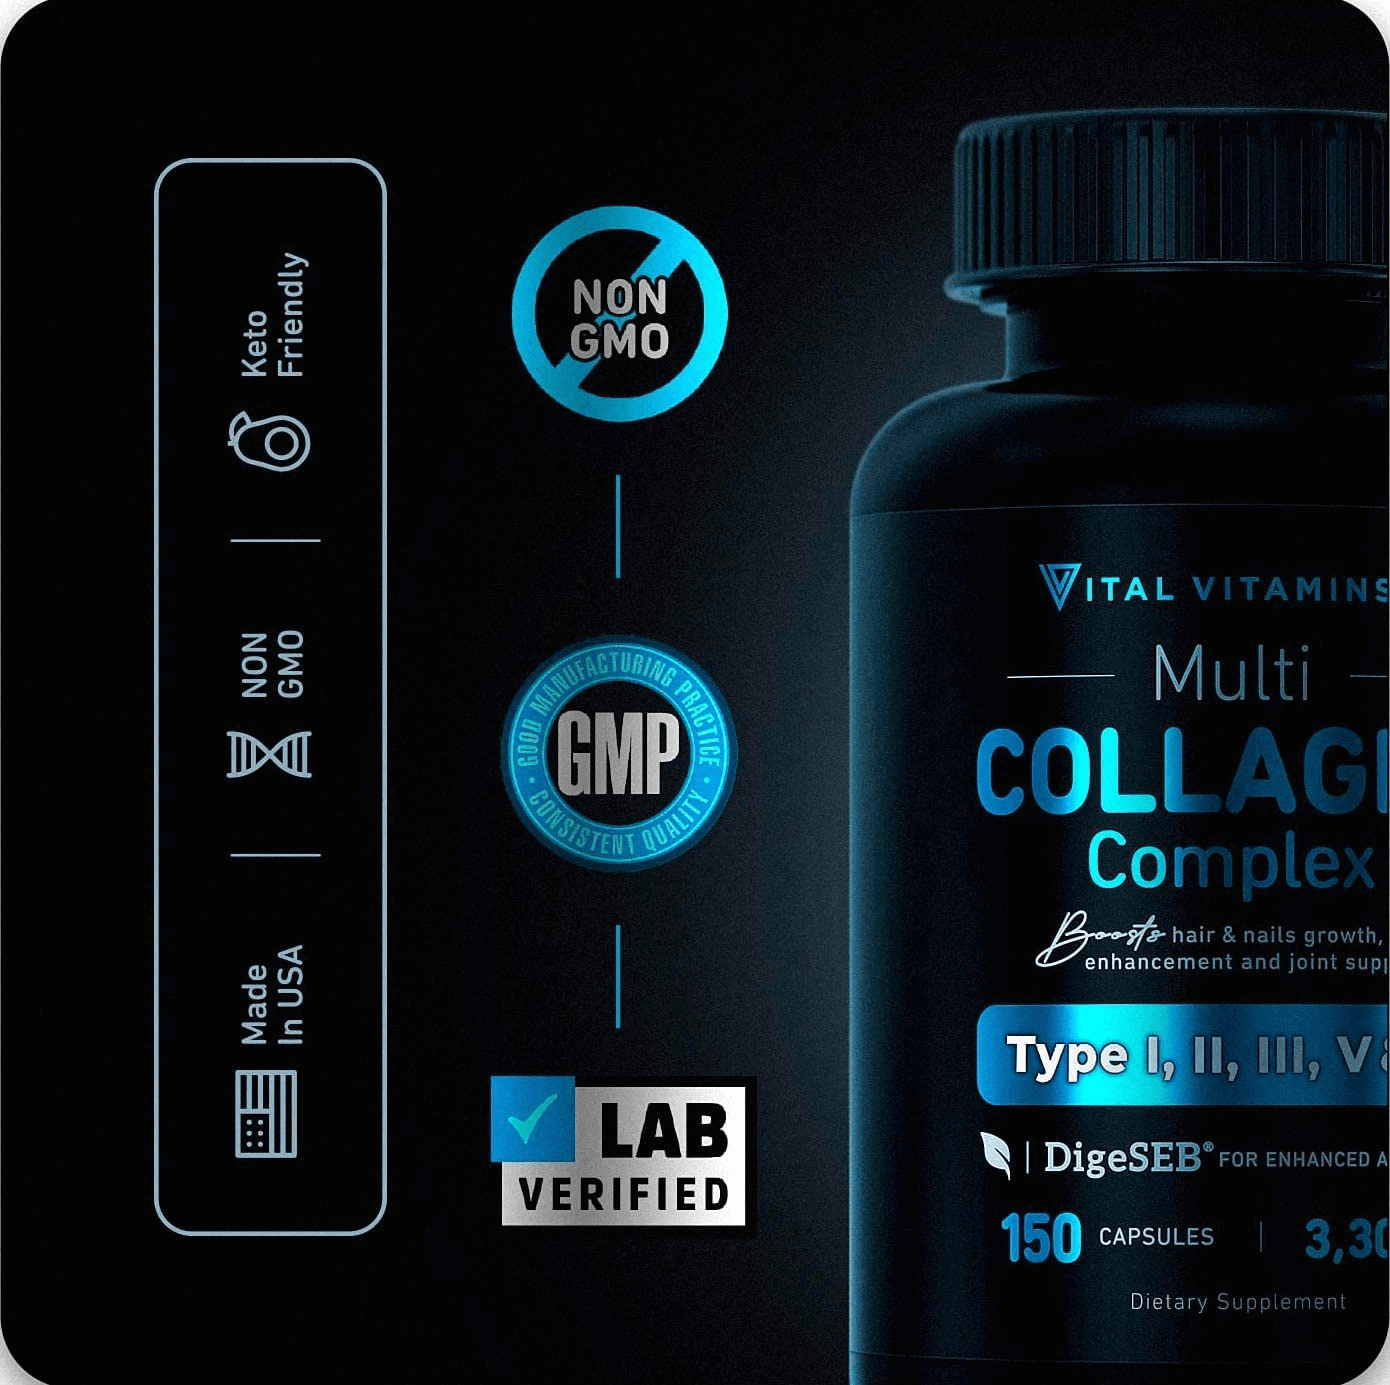 Vital Vitamins Multi Collagen Complex (2 Pack) - Type I, II, III, V, X, Grass Fed, Non-Gmo, 300 Capsules - vitamenstore.com